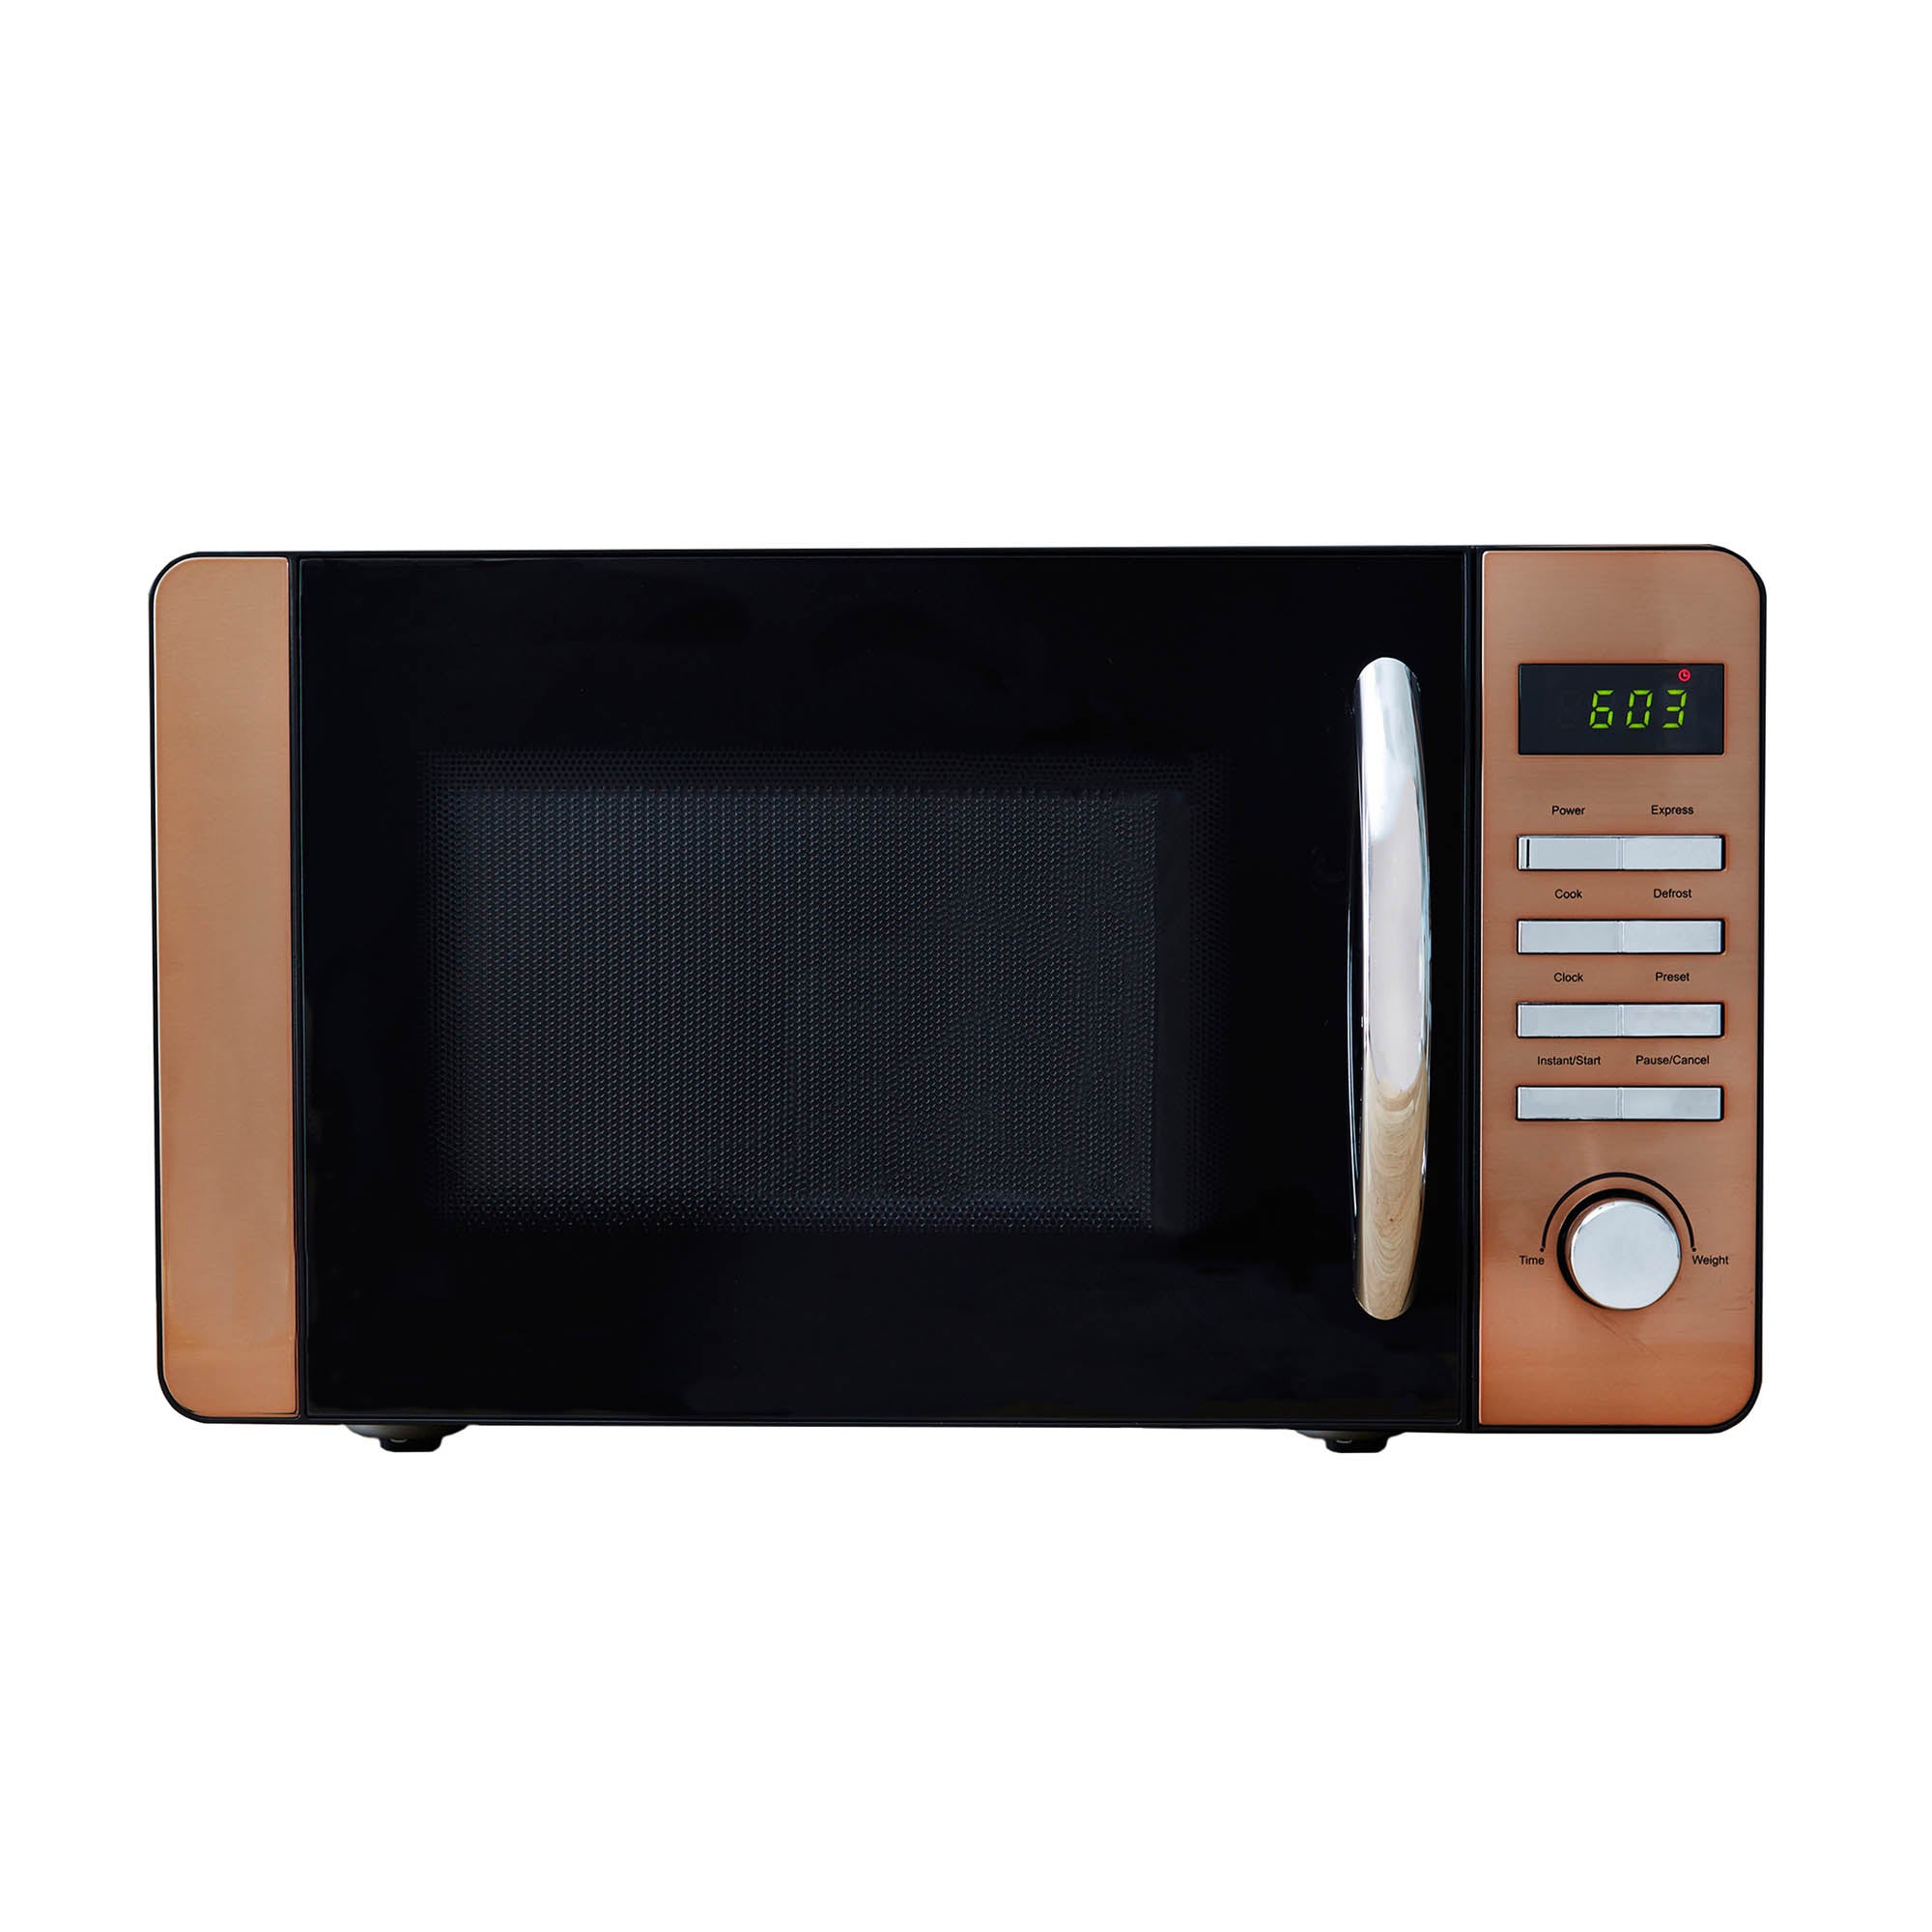 Digital 20L 800W Microwave, Copper Copper